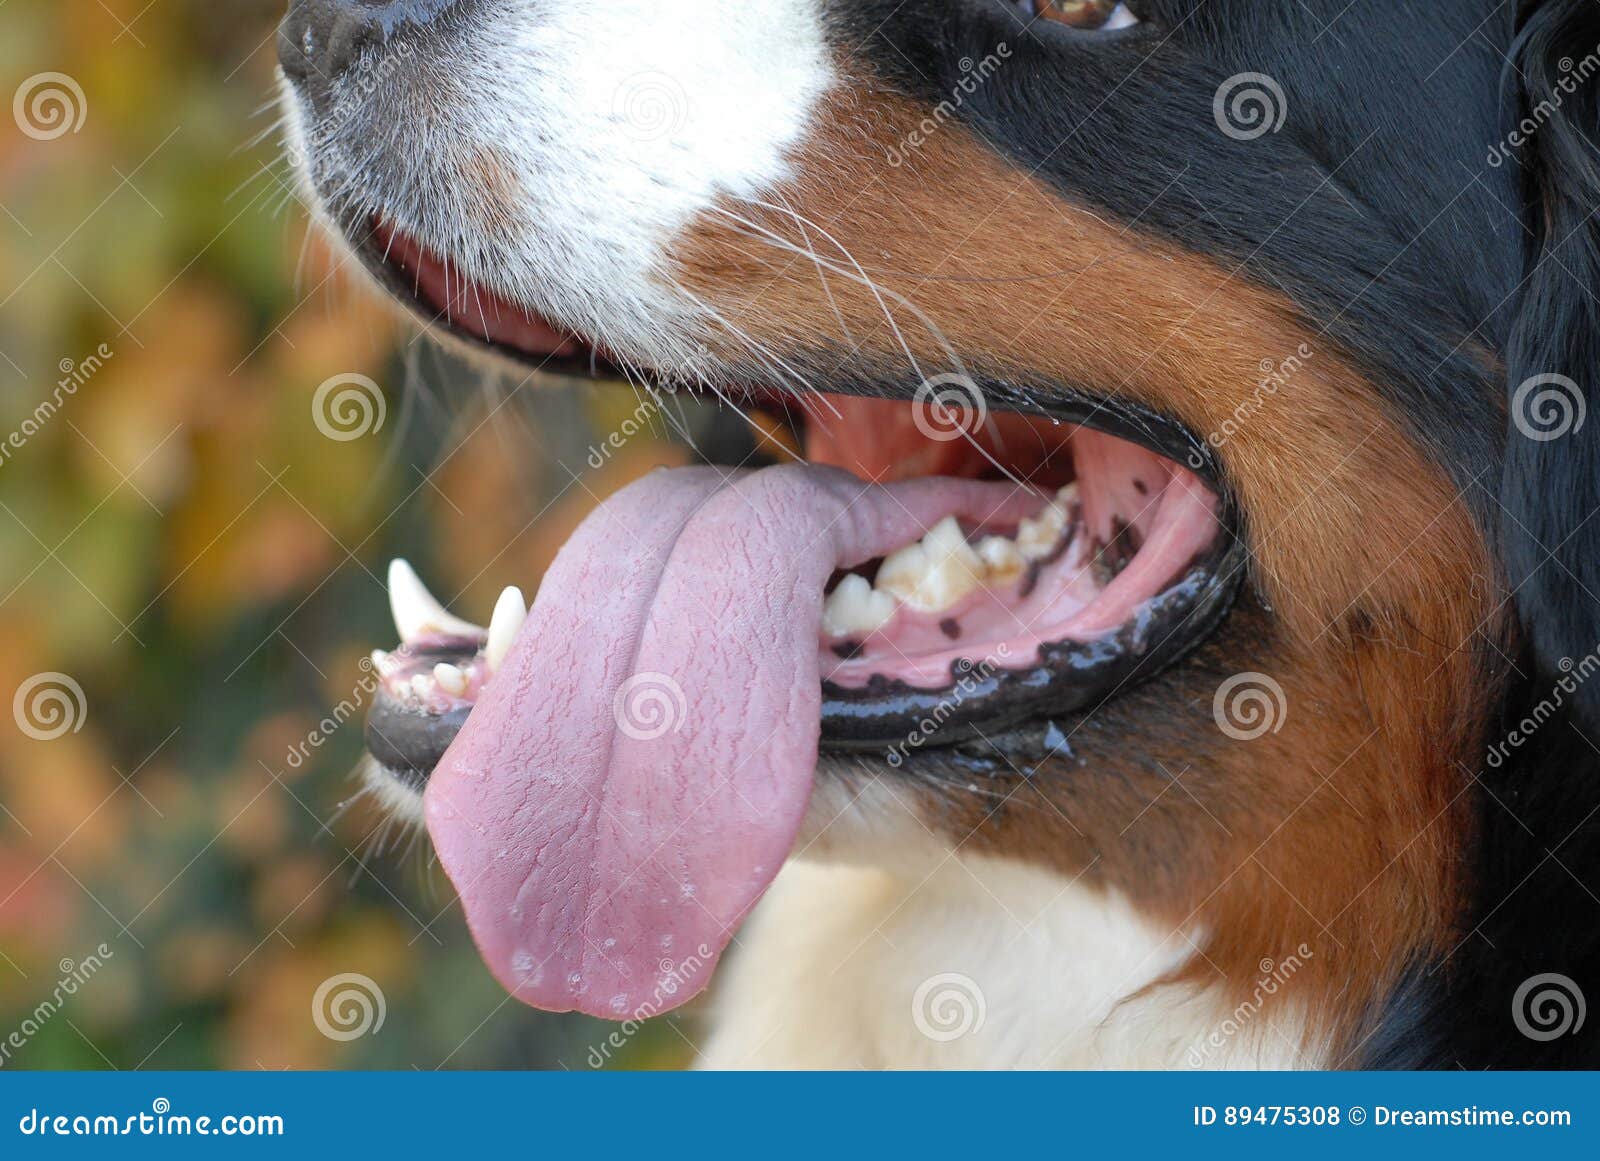 Почему собака дышит с высунутым языком. Собака с высунутым языком. Собака дышит с открытым ртом. Собака дышит высунув язык. Иллюстрации щенок с высунутым языком.